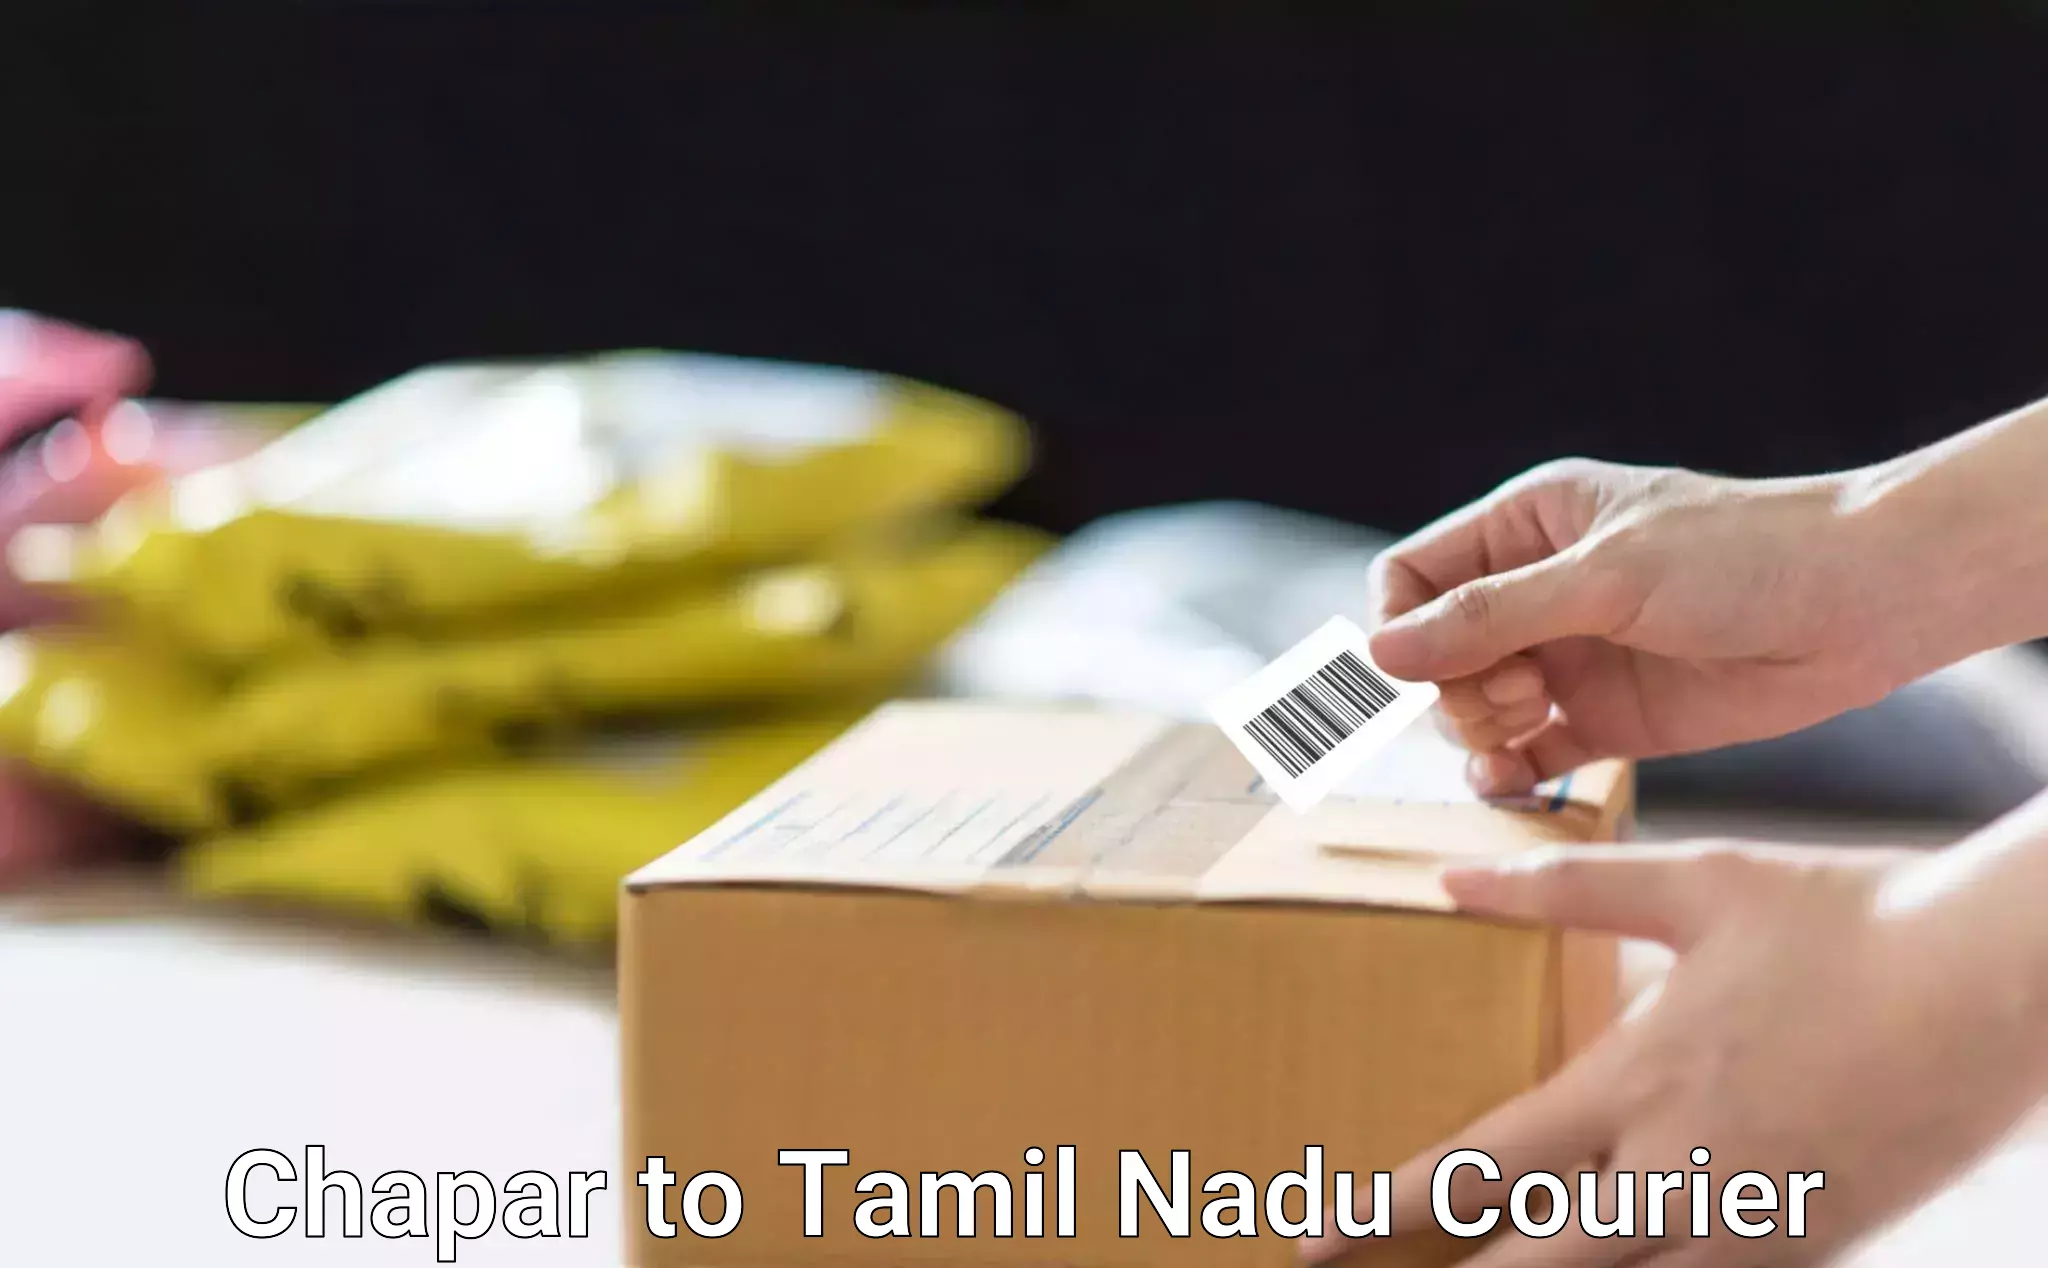 Parcel delivery Chapar to Tamil Nadu